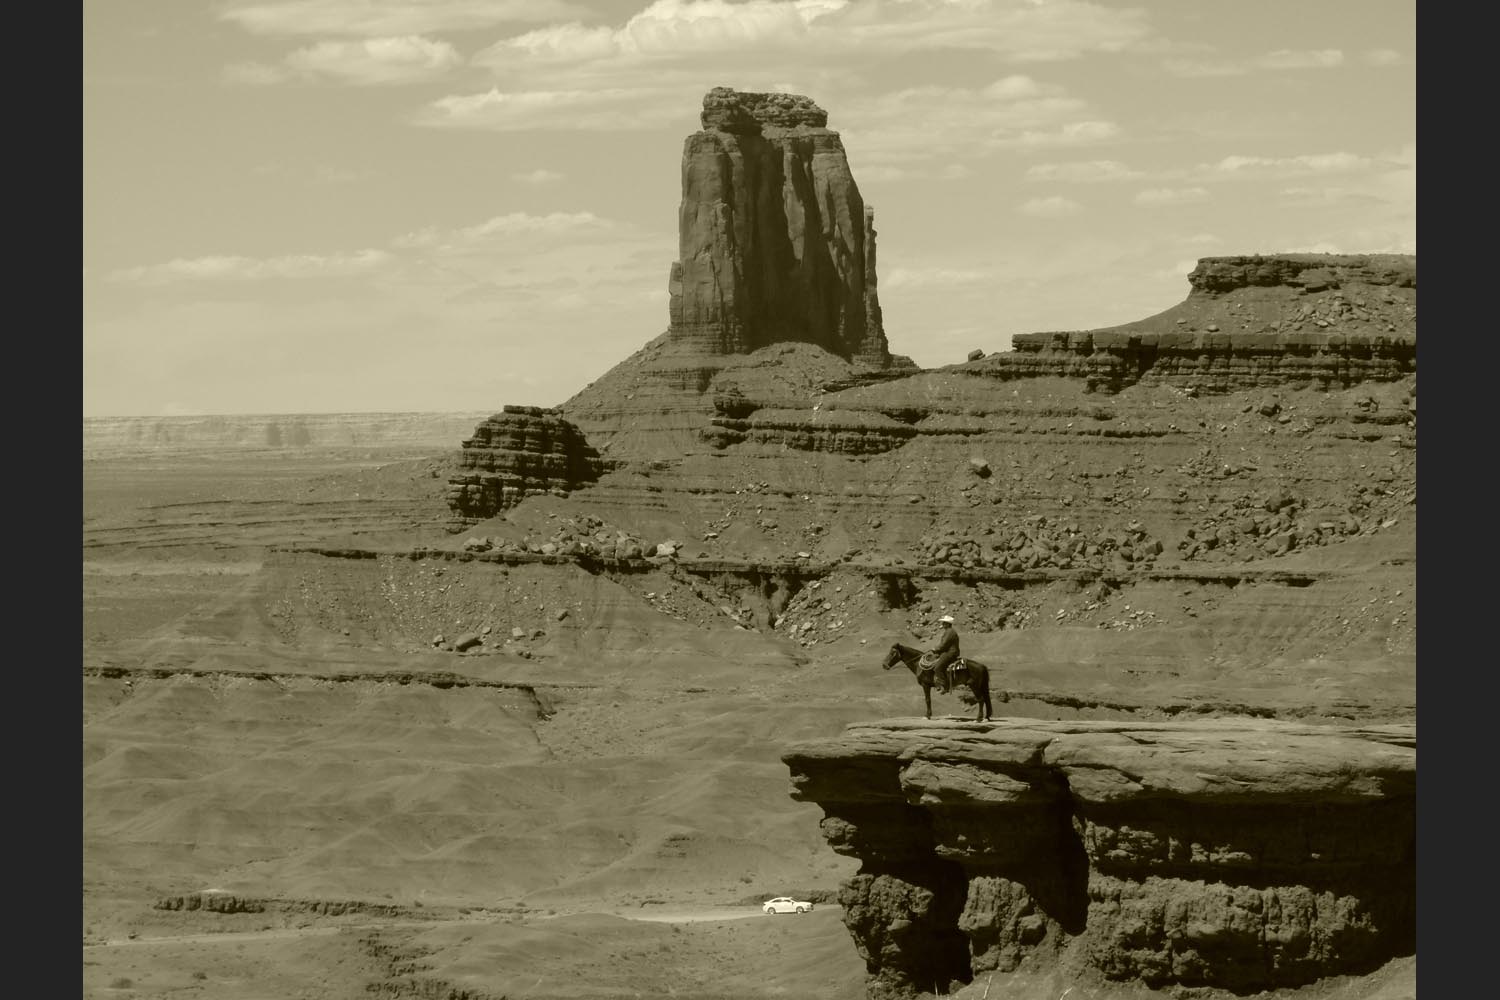 Peter Heller: Monument Valley - Utah